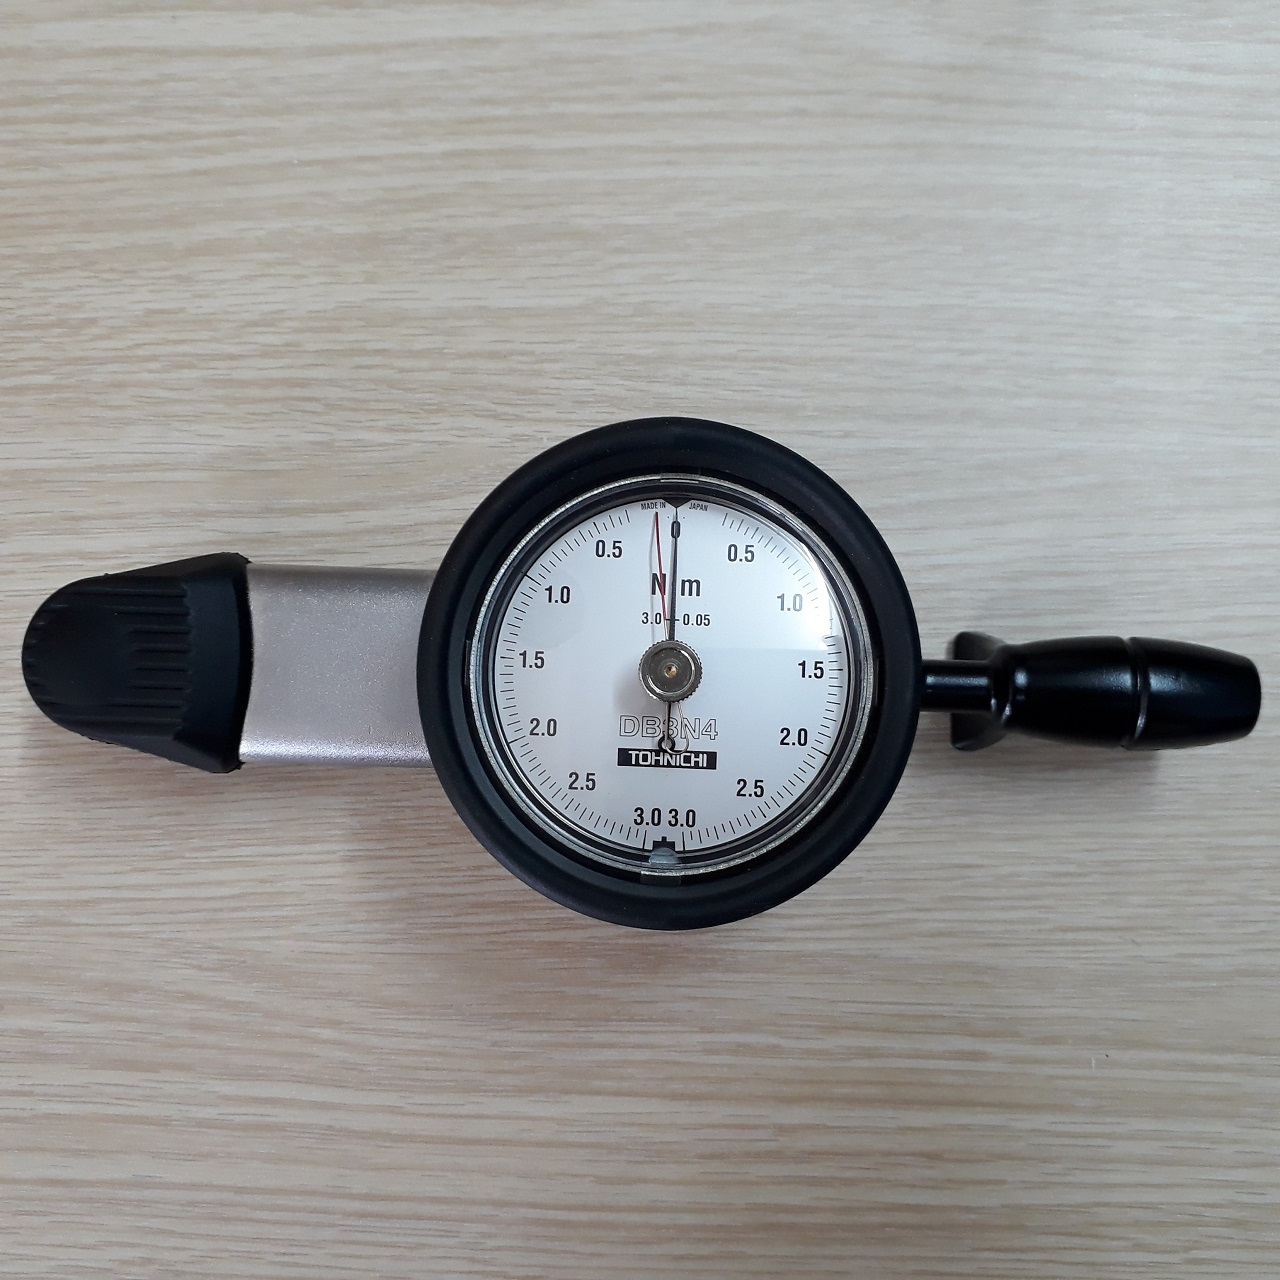 Cờ lê đo lực xoắn siết Tohnichi DB3N4-S, dải lực 0.3 - 3 N.m, đầu siết 1/4in, có đồng hồ hiển thị